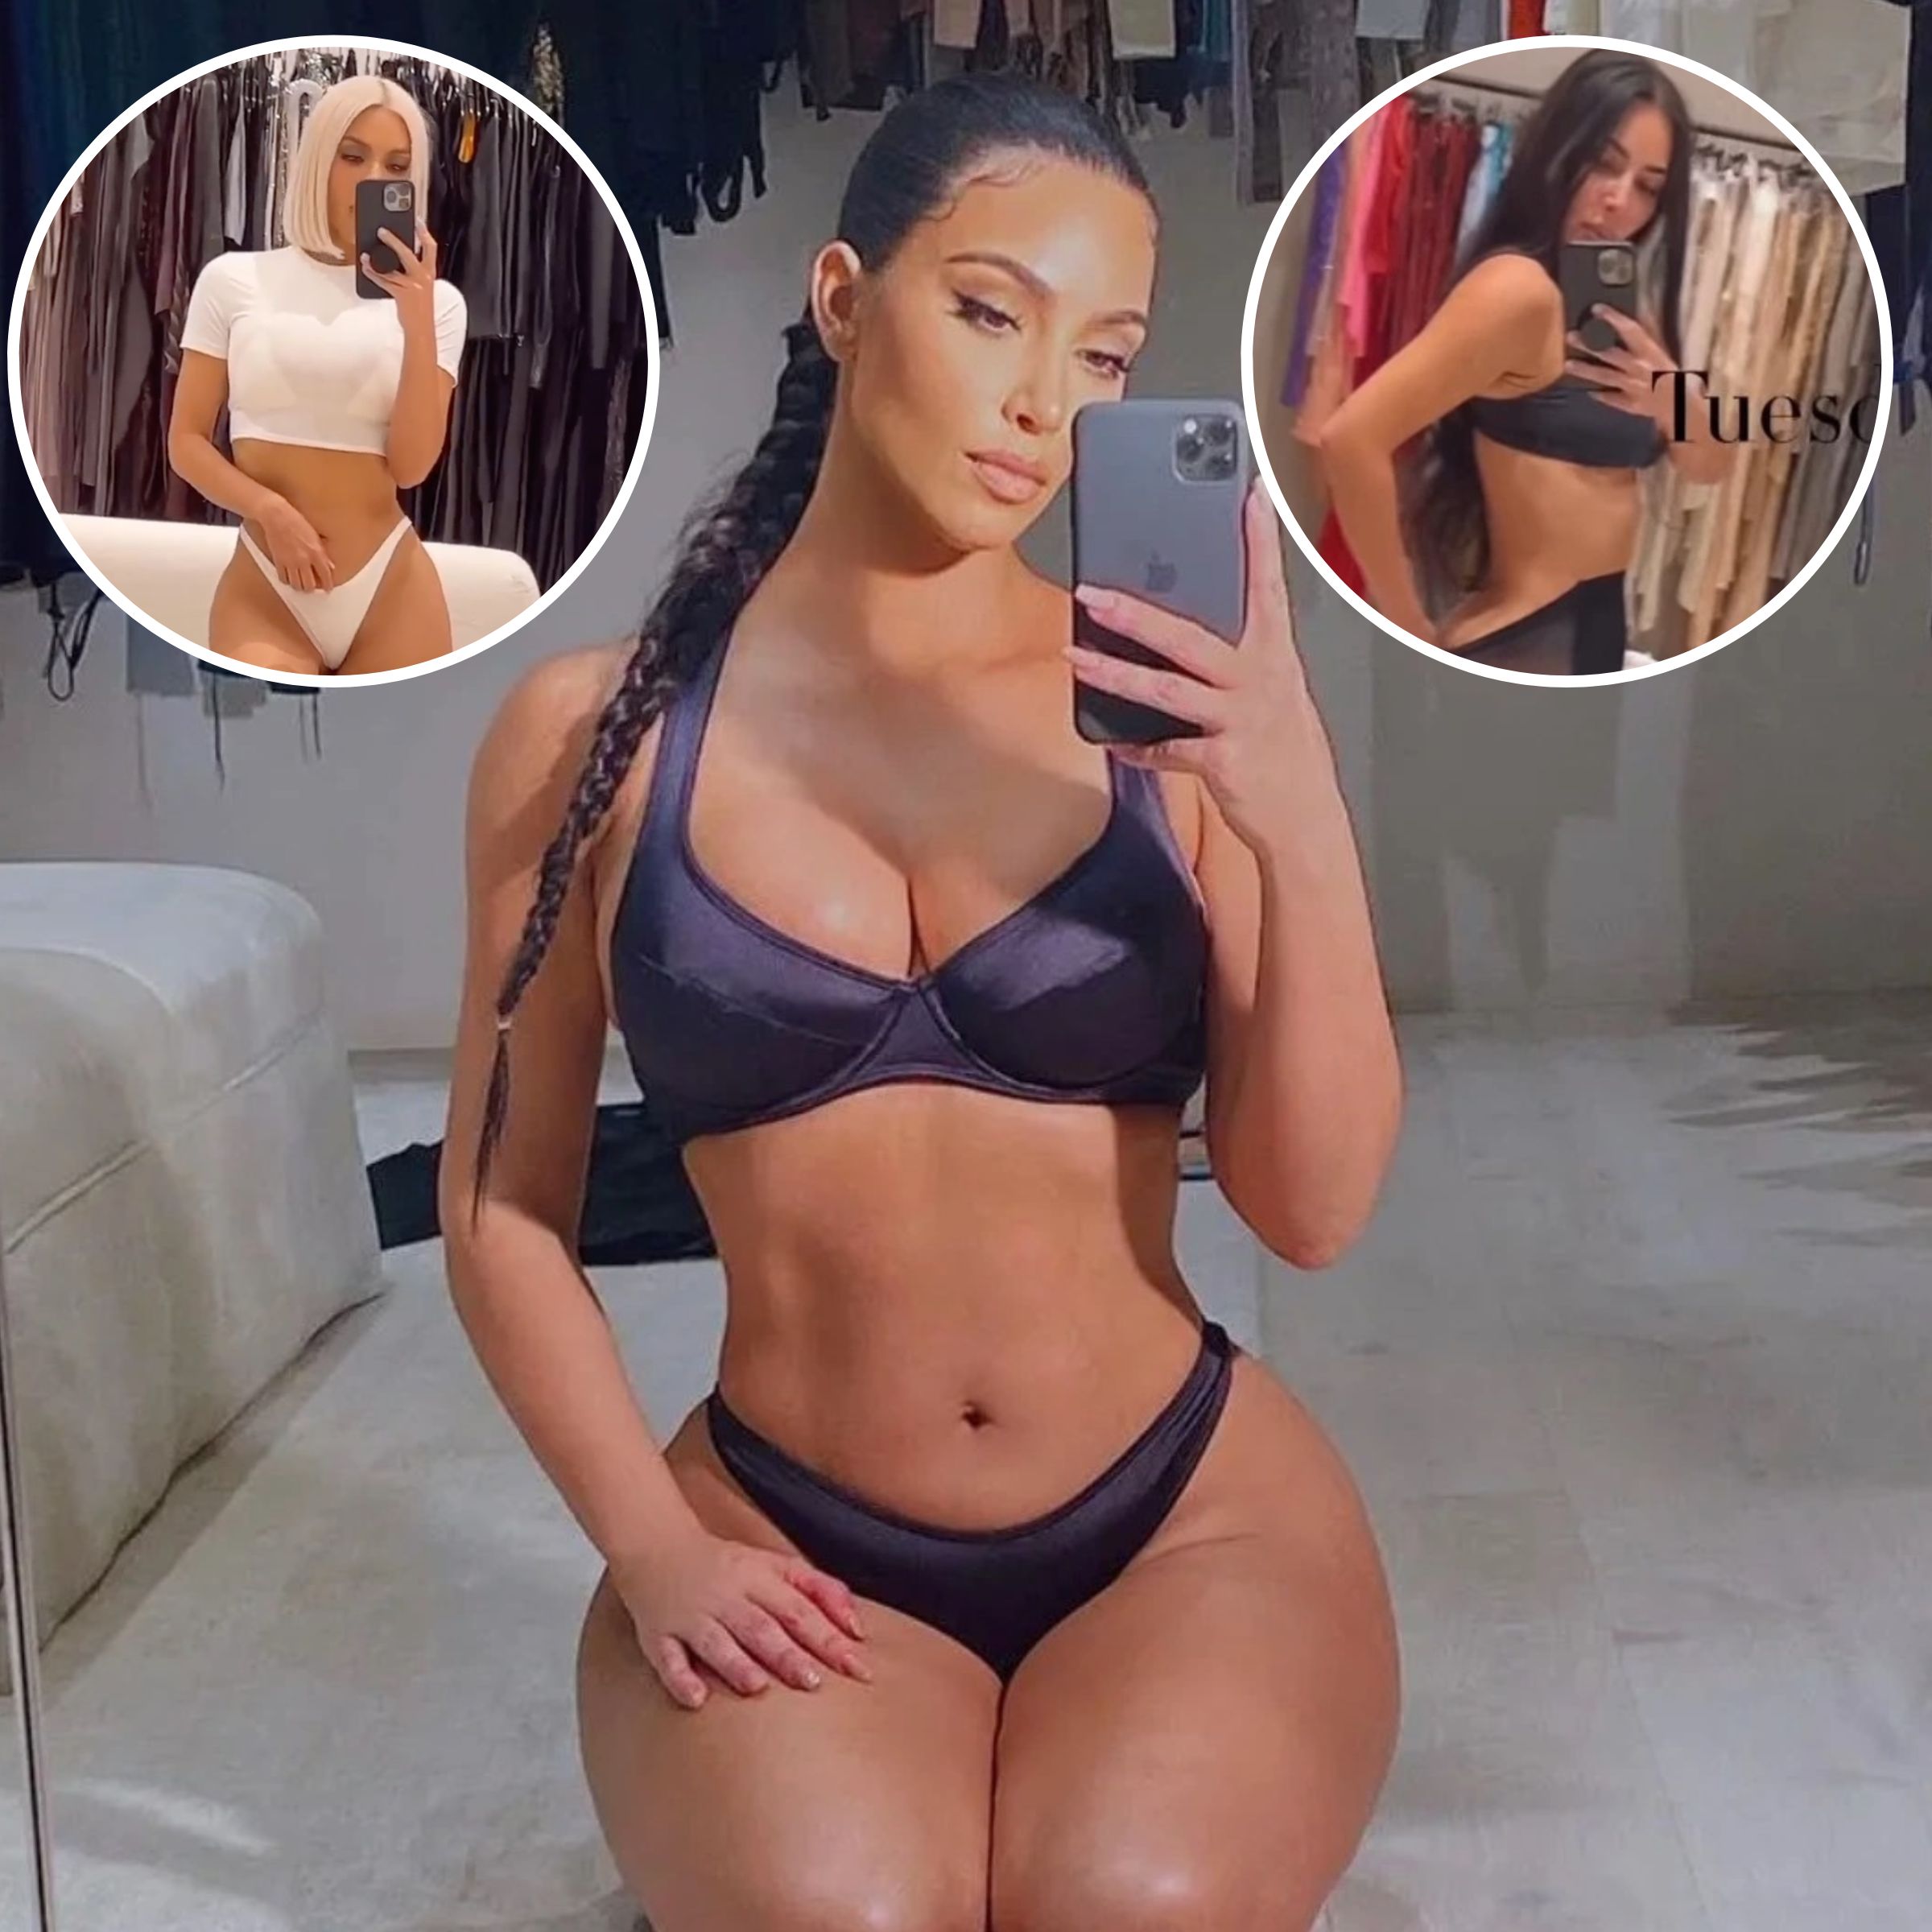 Kim Kardashian Shared a Bikini Selfie From Her Massive Closet